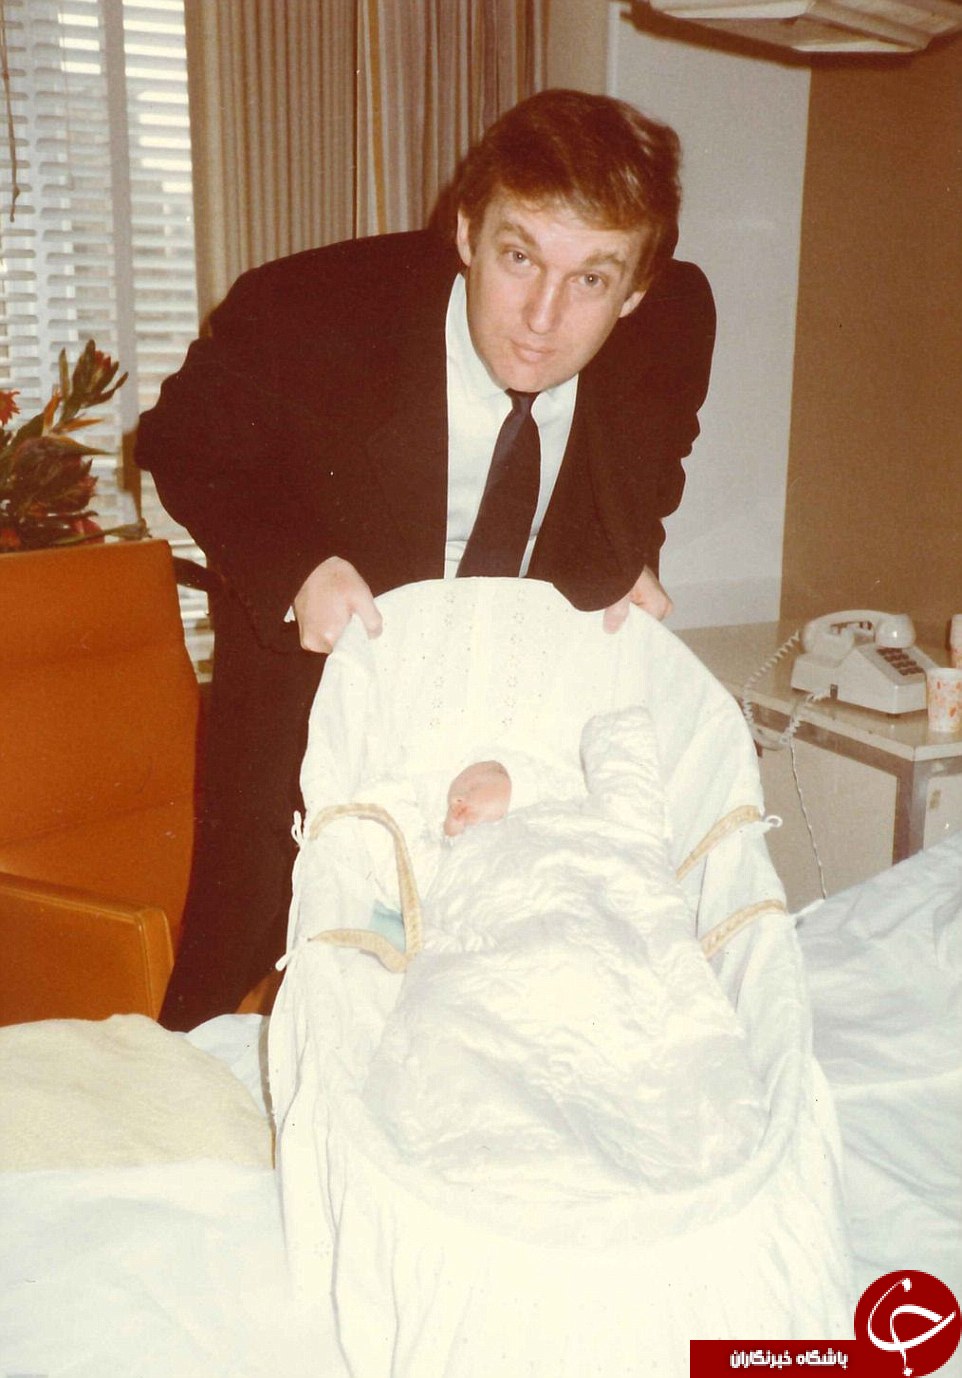 عکس های خصوصی لو رفته خانوادگی دونالد ترامپ!